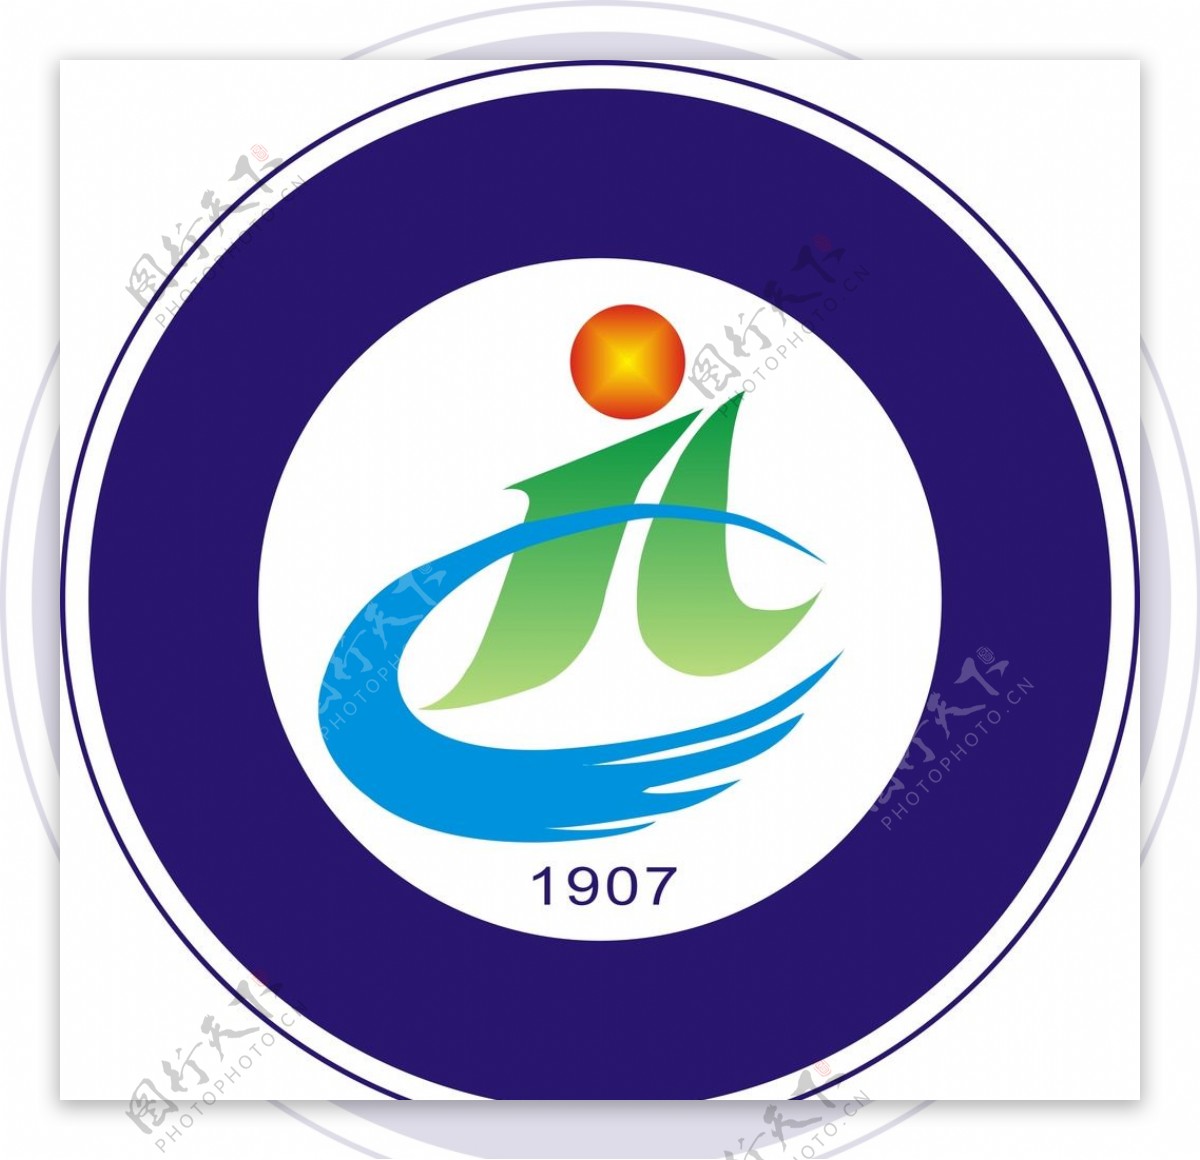 吉林农业科技学院logo图片